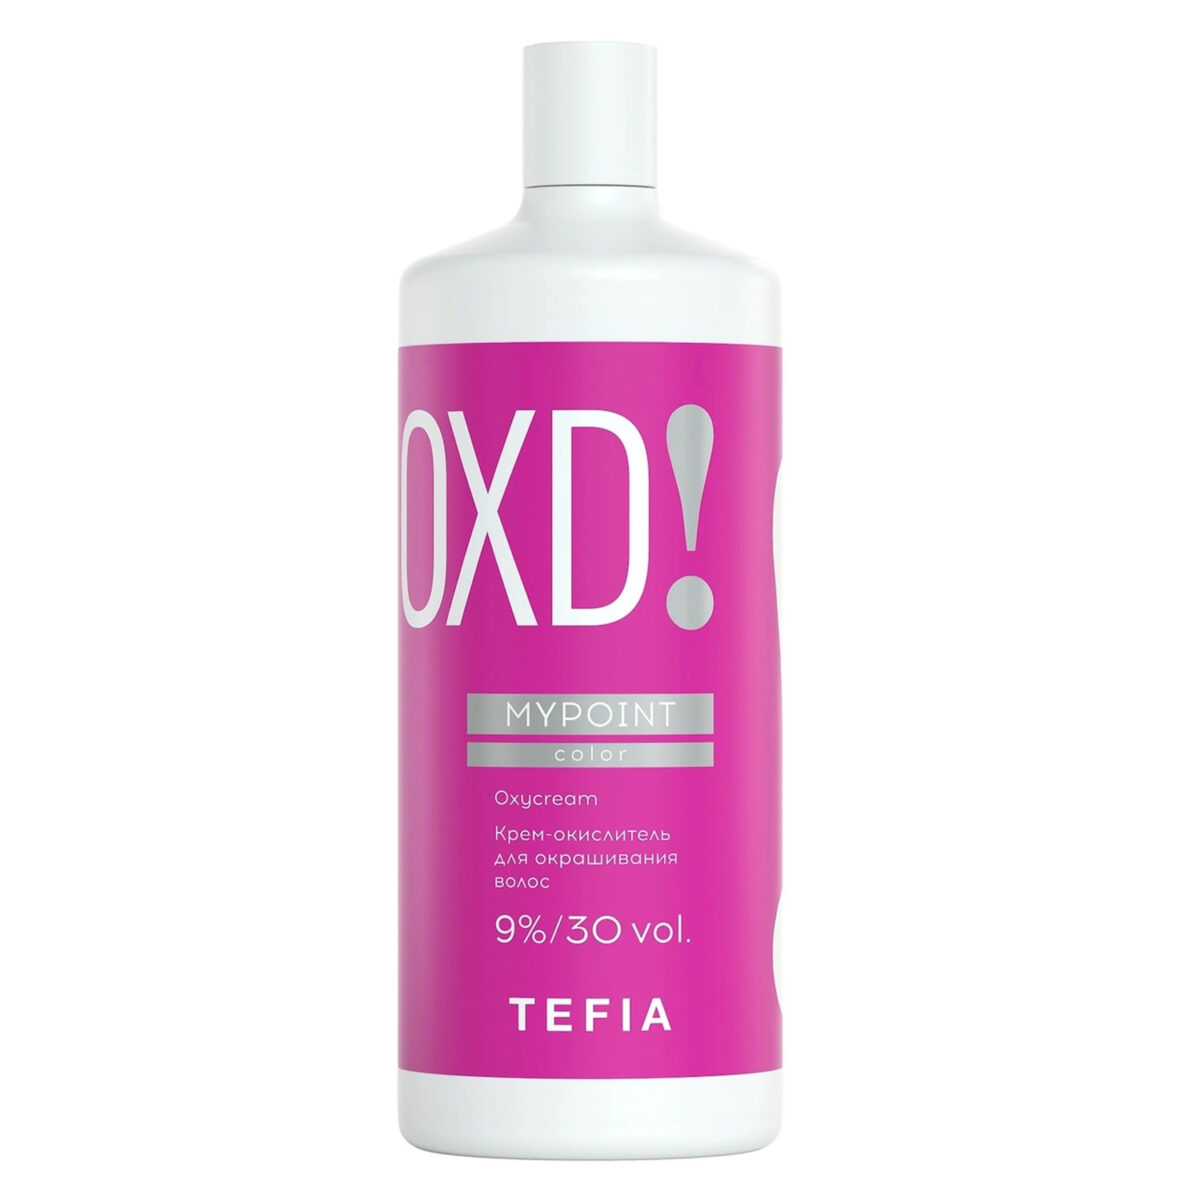 tefMPOXD60046, MYPOINT Крем-окислитель для окрашивания волос 9%/30 vol 900 мл, TEFIA